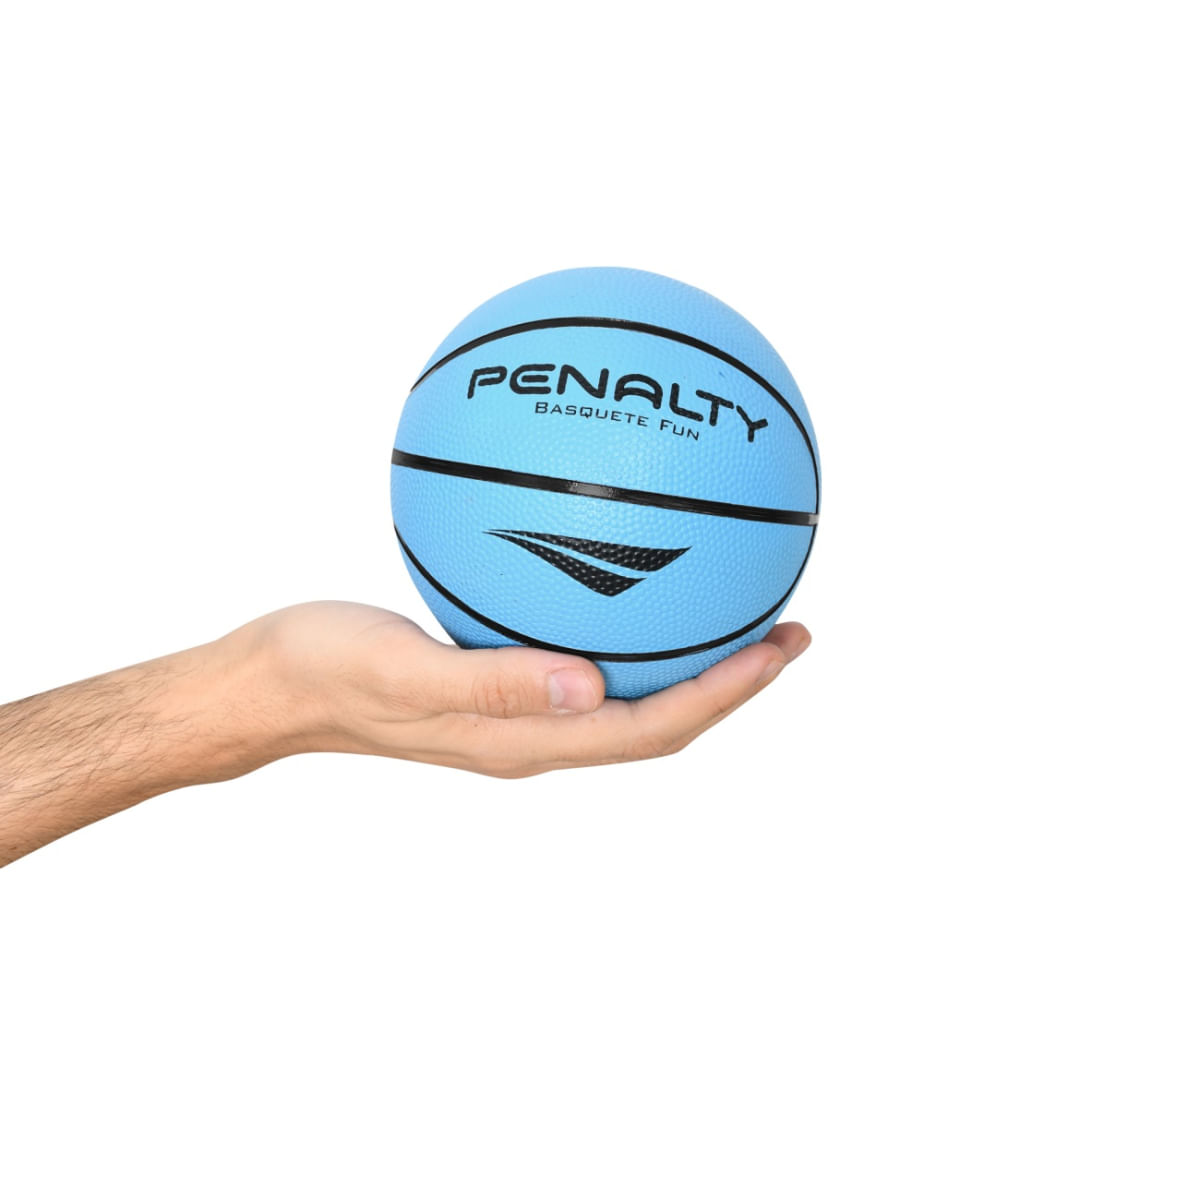 bola basquete penalty playoff ix bomba de ar en Rei das Bolas Rei das Bolas